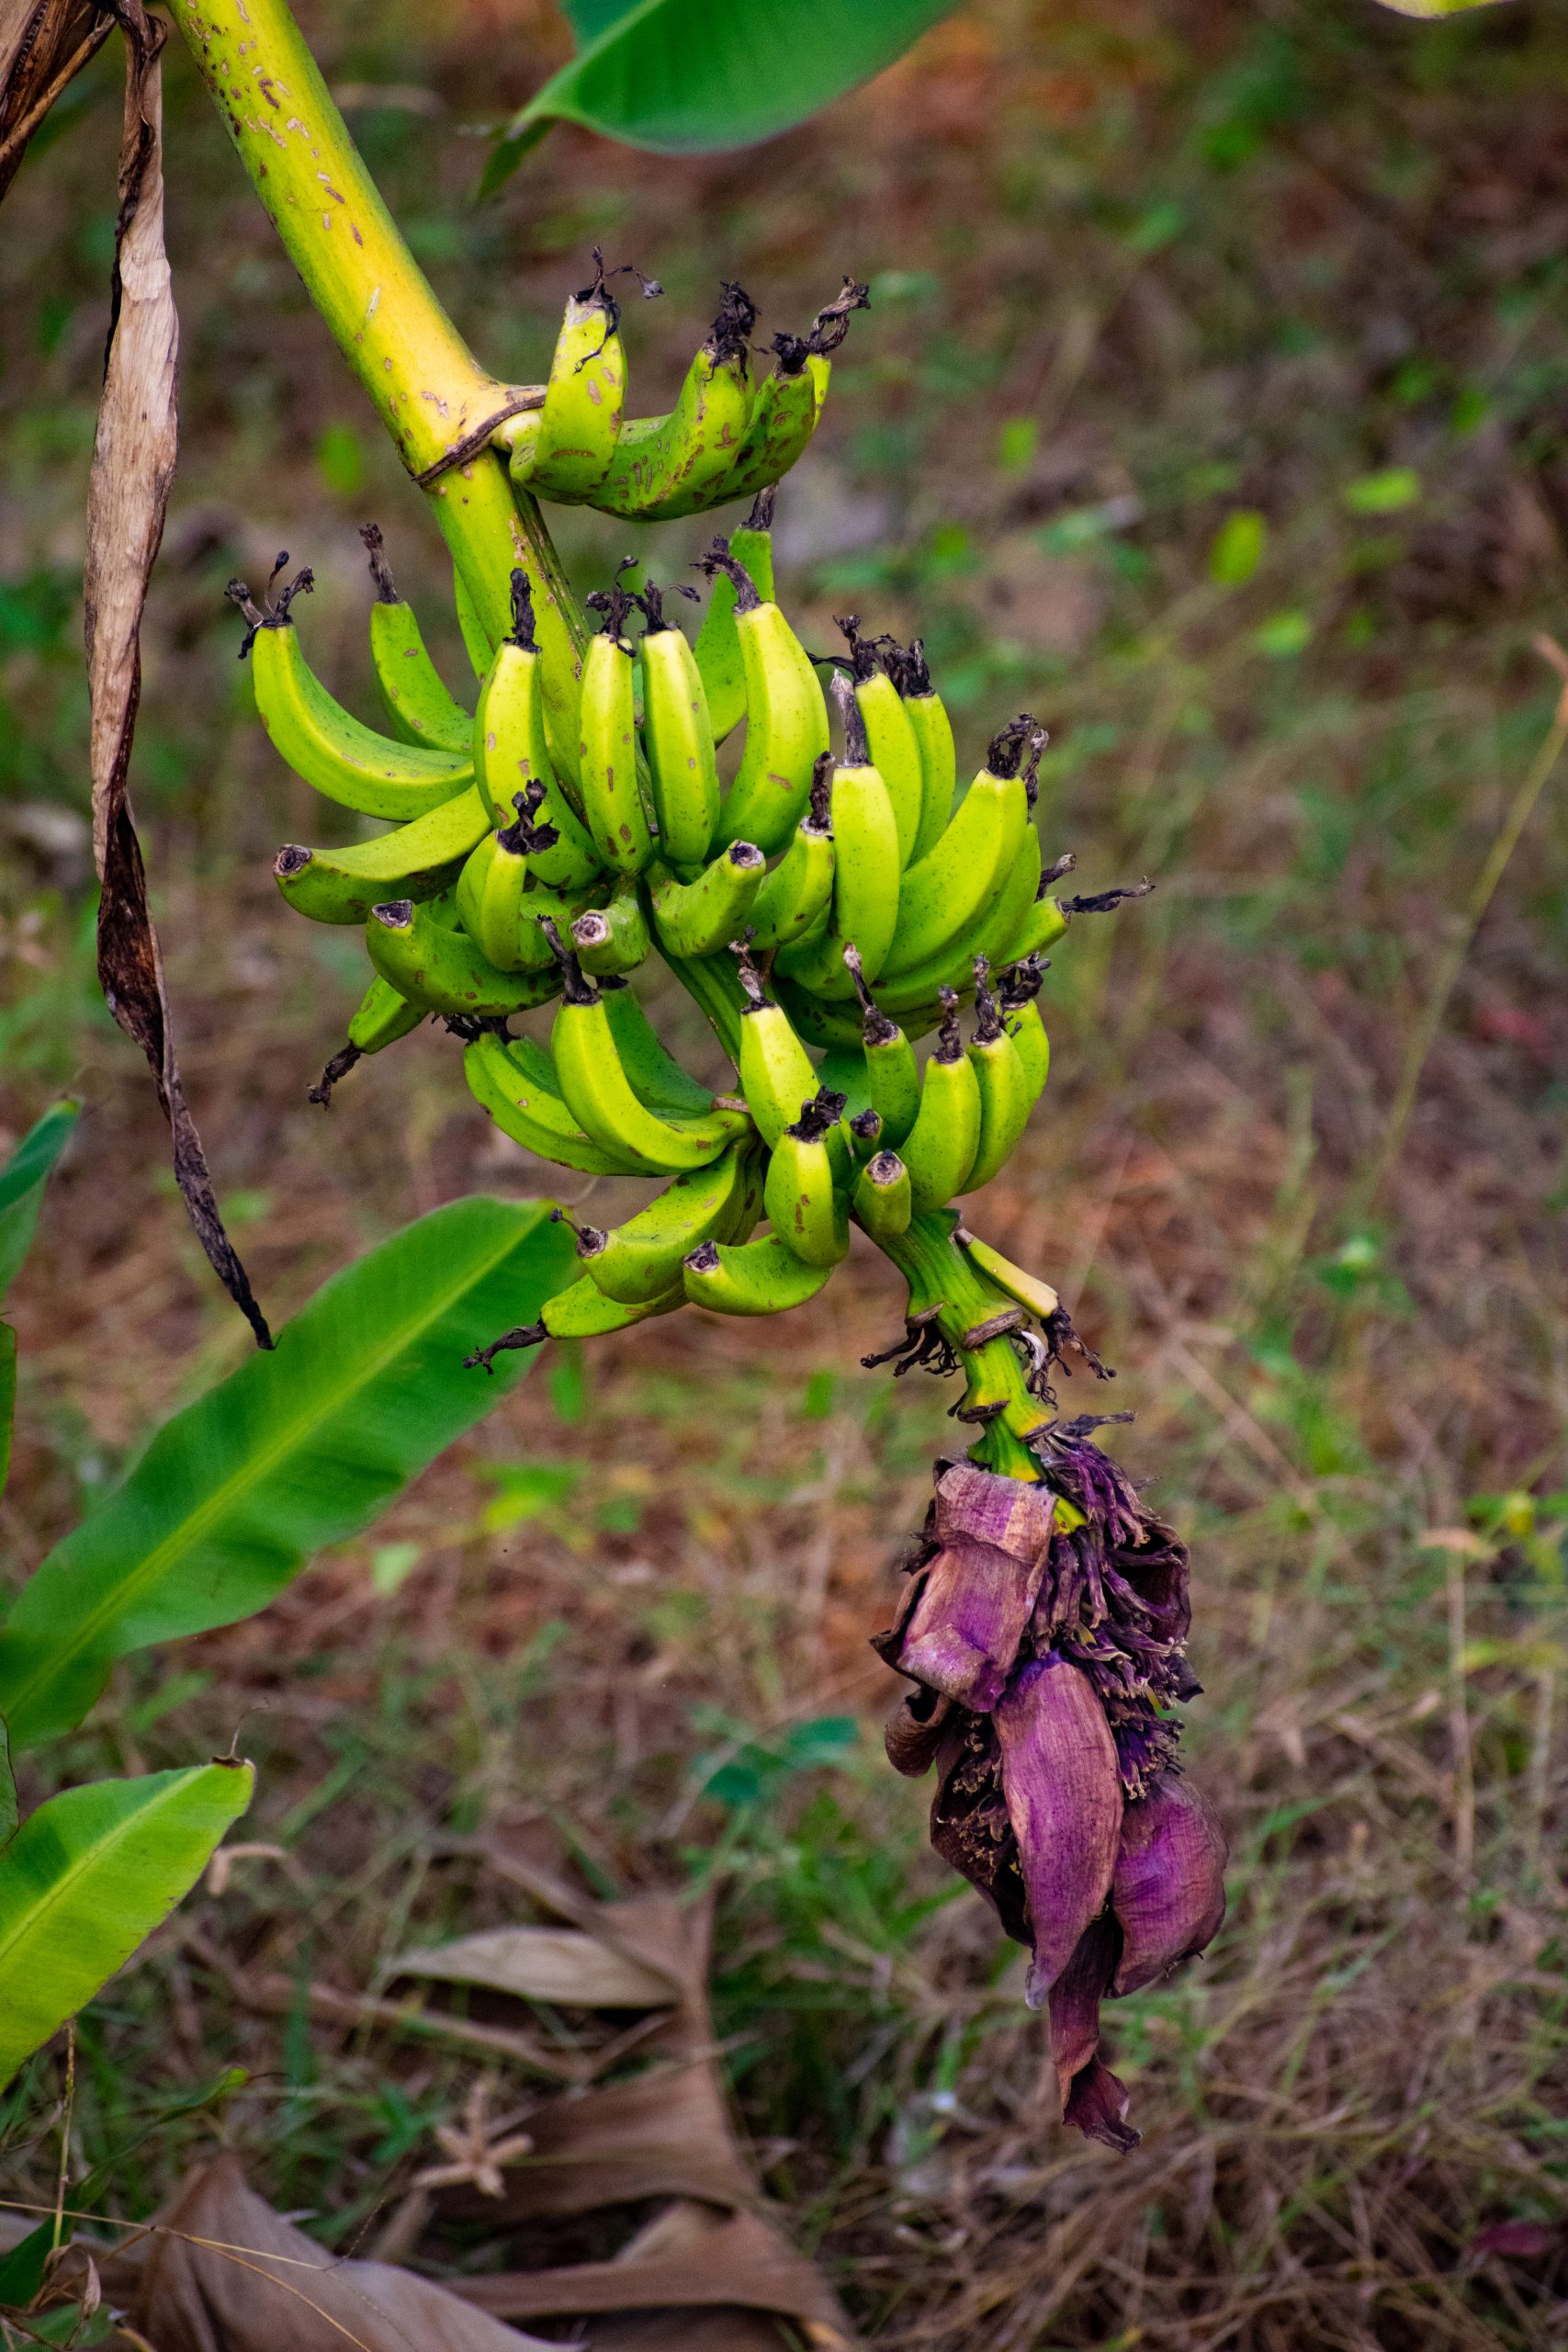 Banana clumps on its tree